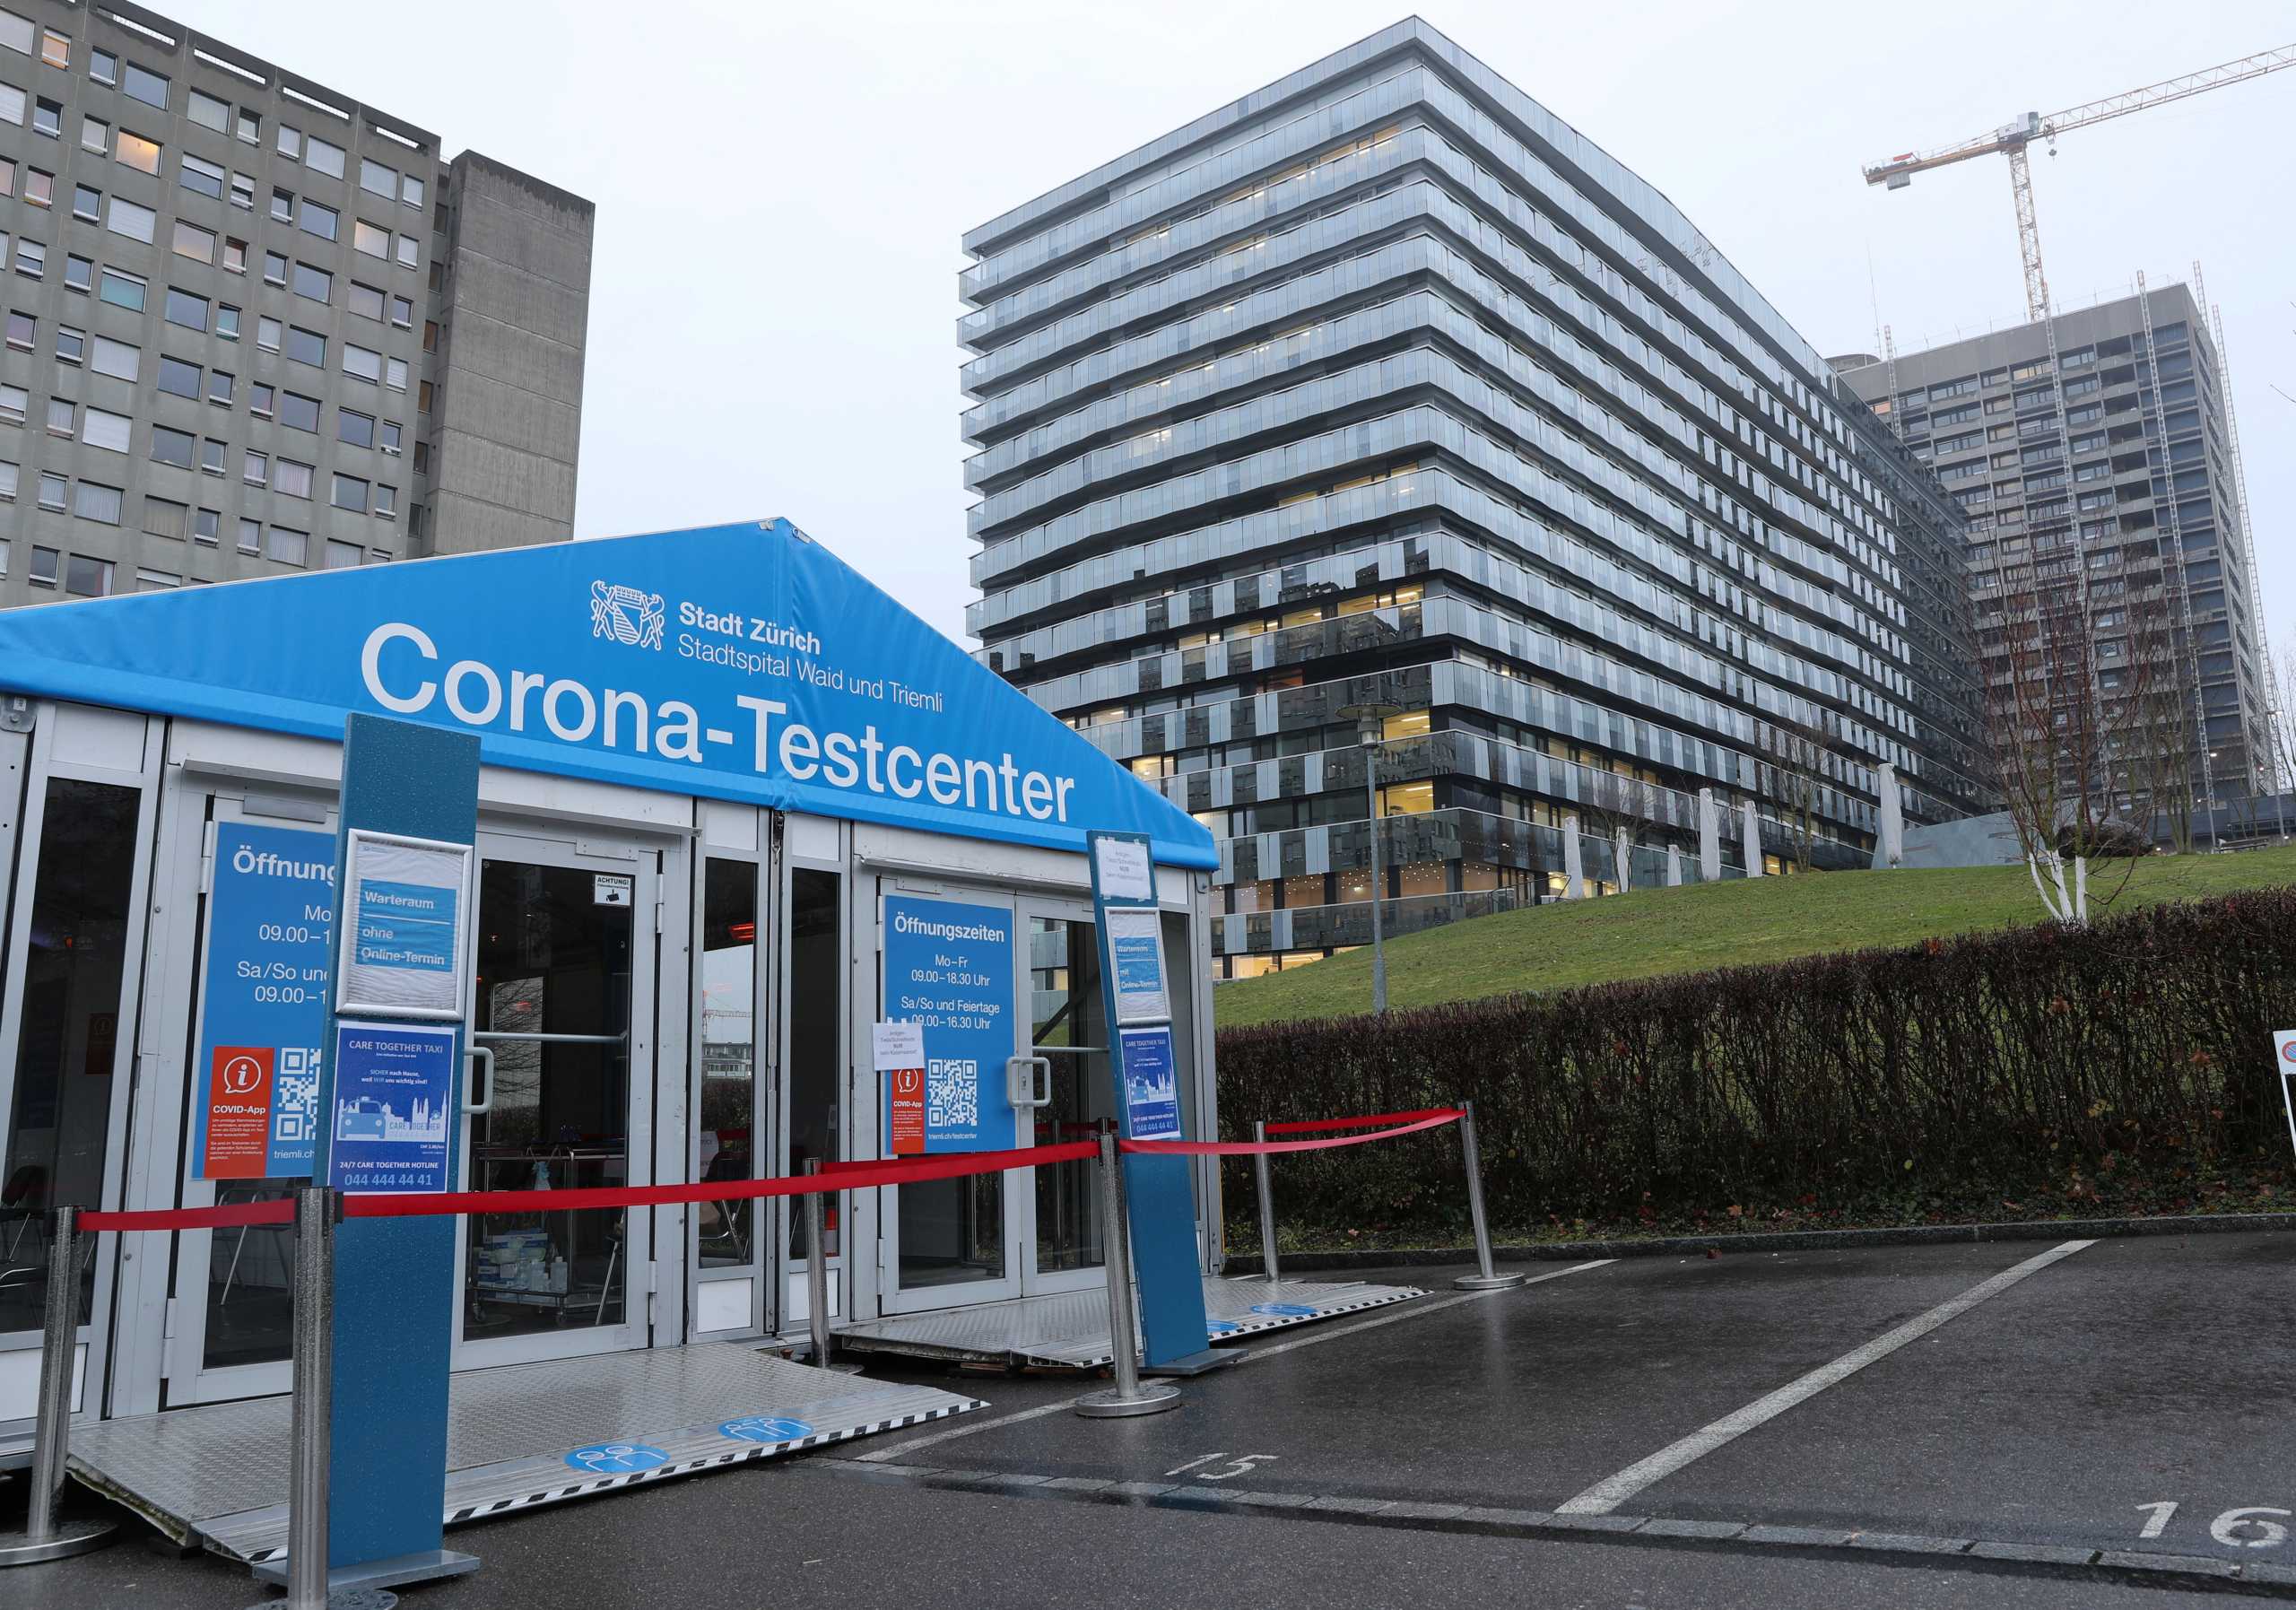 Κραυγή αγωνίας για τον κορονοϊό στην Ελβετία: οι διευθυντές 5 νοσοκομείων ζητούν επειγόντως μέτρα